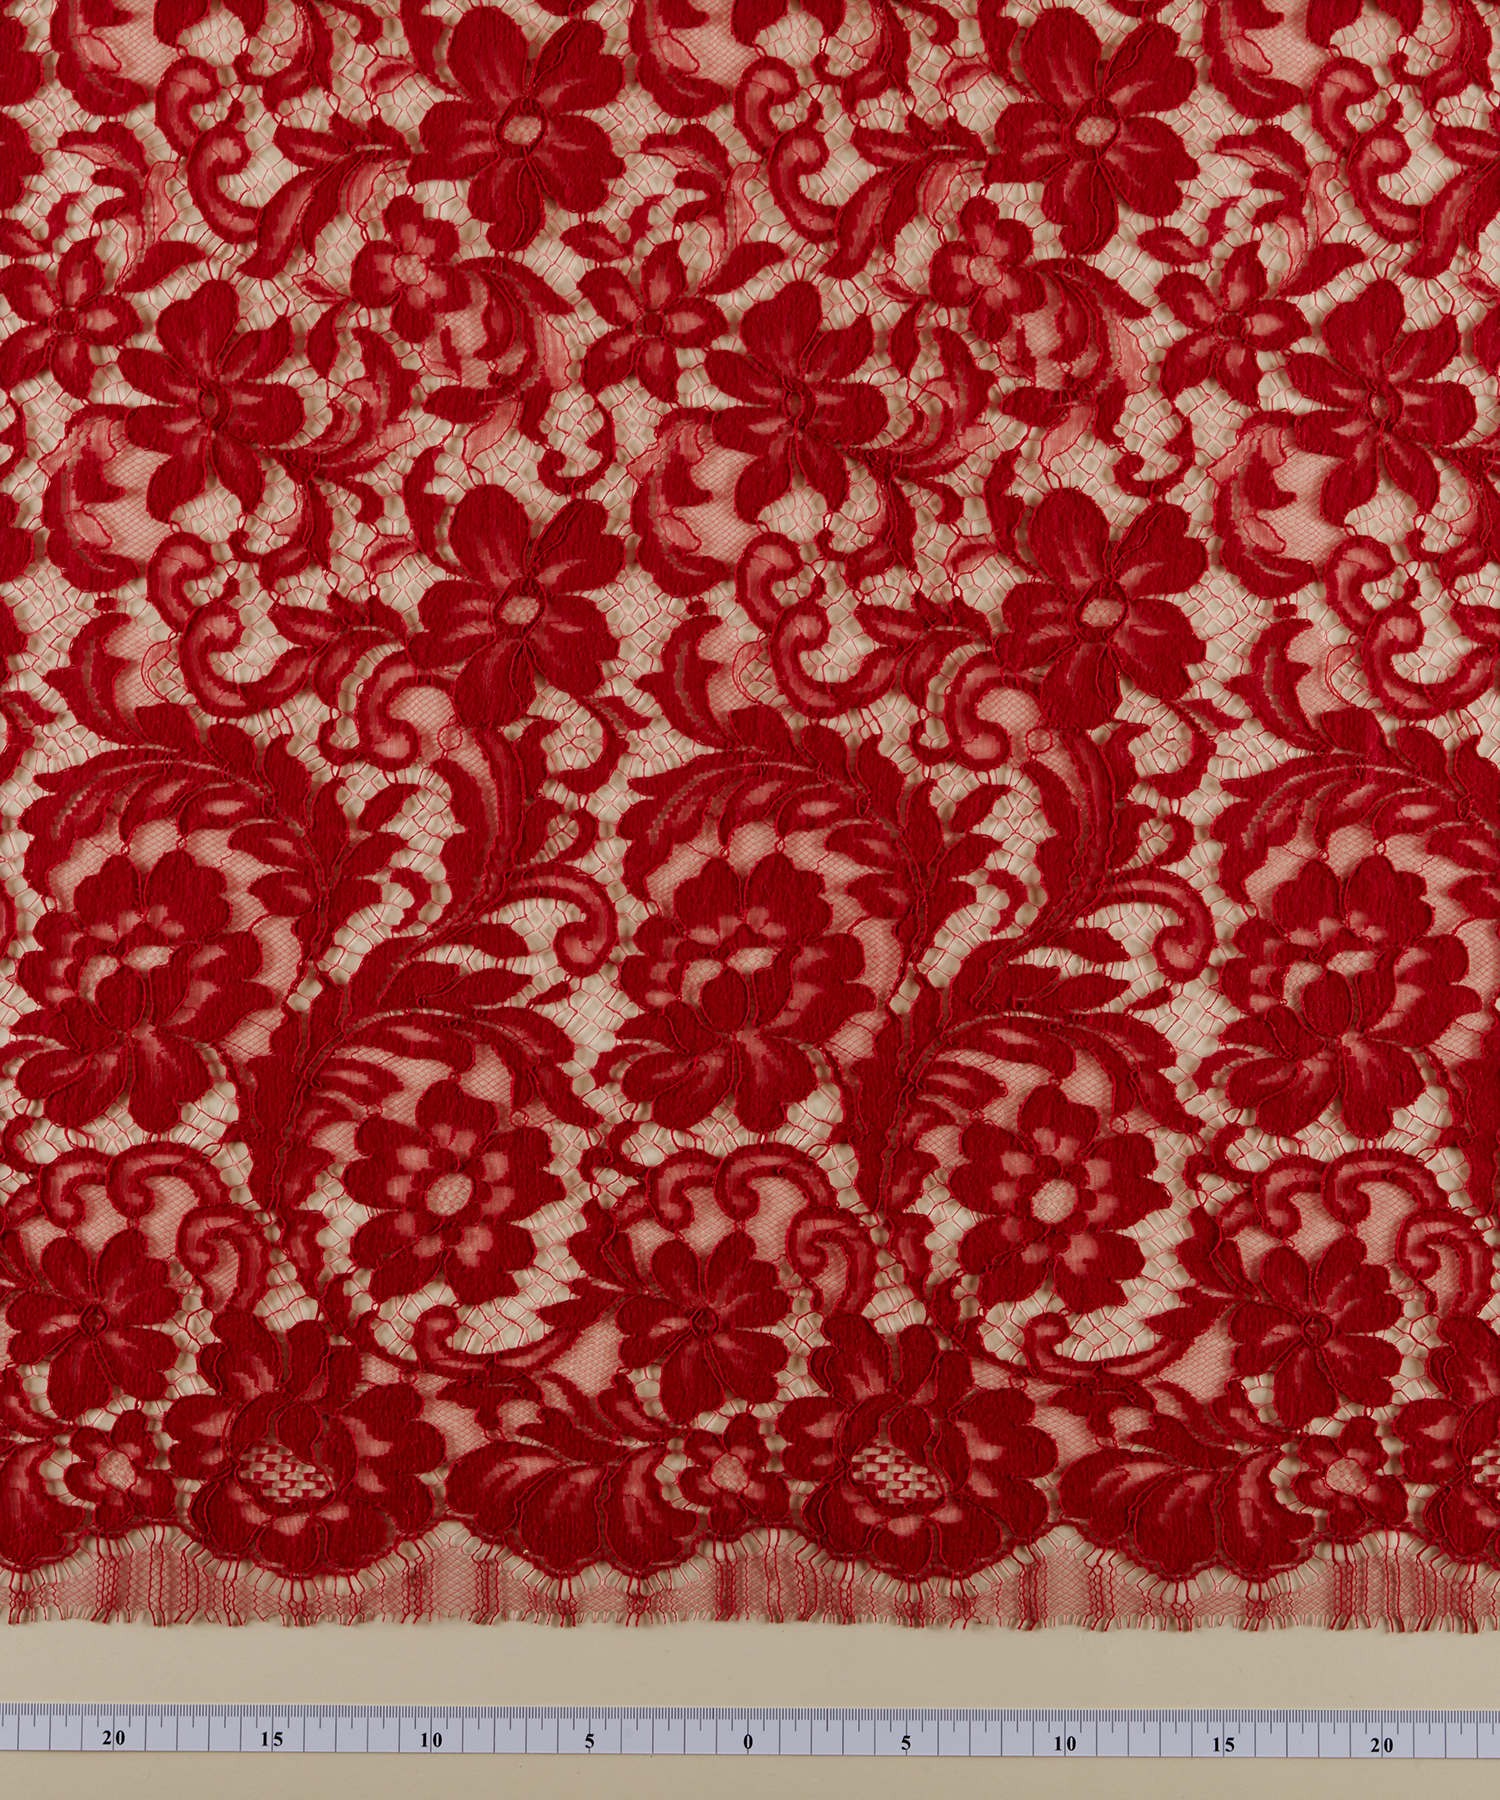 Chenonceau 90 cm | Lace & embroidery • Sophie Hallette